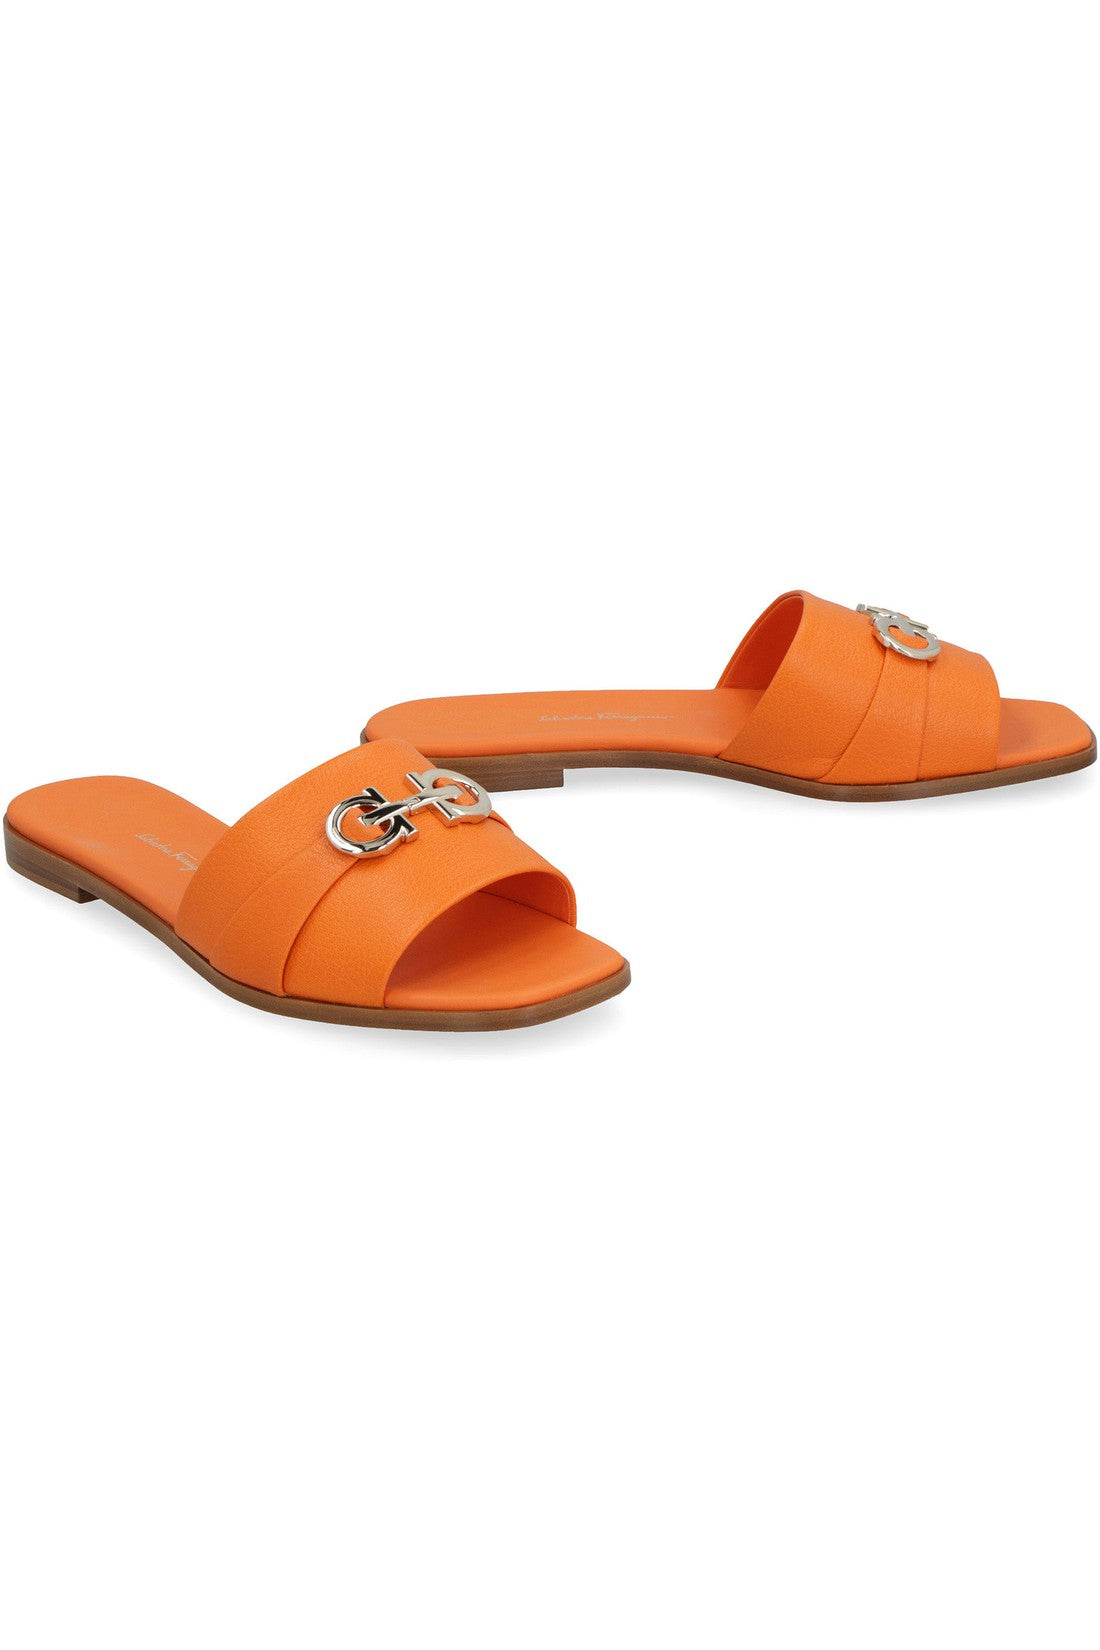 FERRAGAMO-OUTLET-SALE-Leather flat sandals-ARCHIVIST